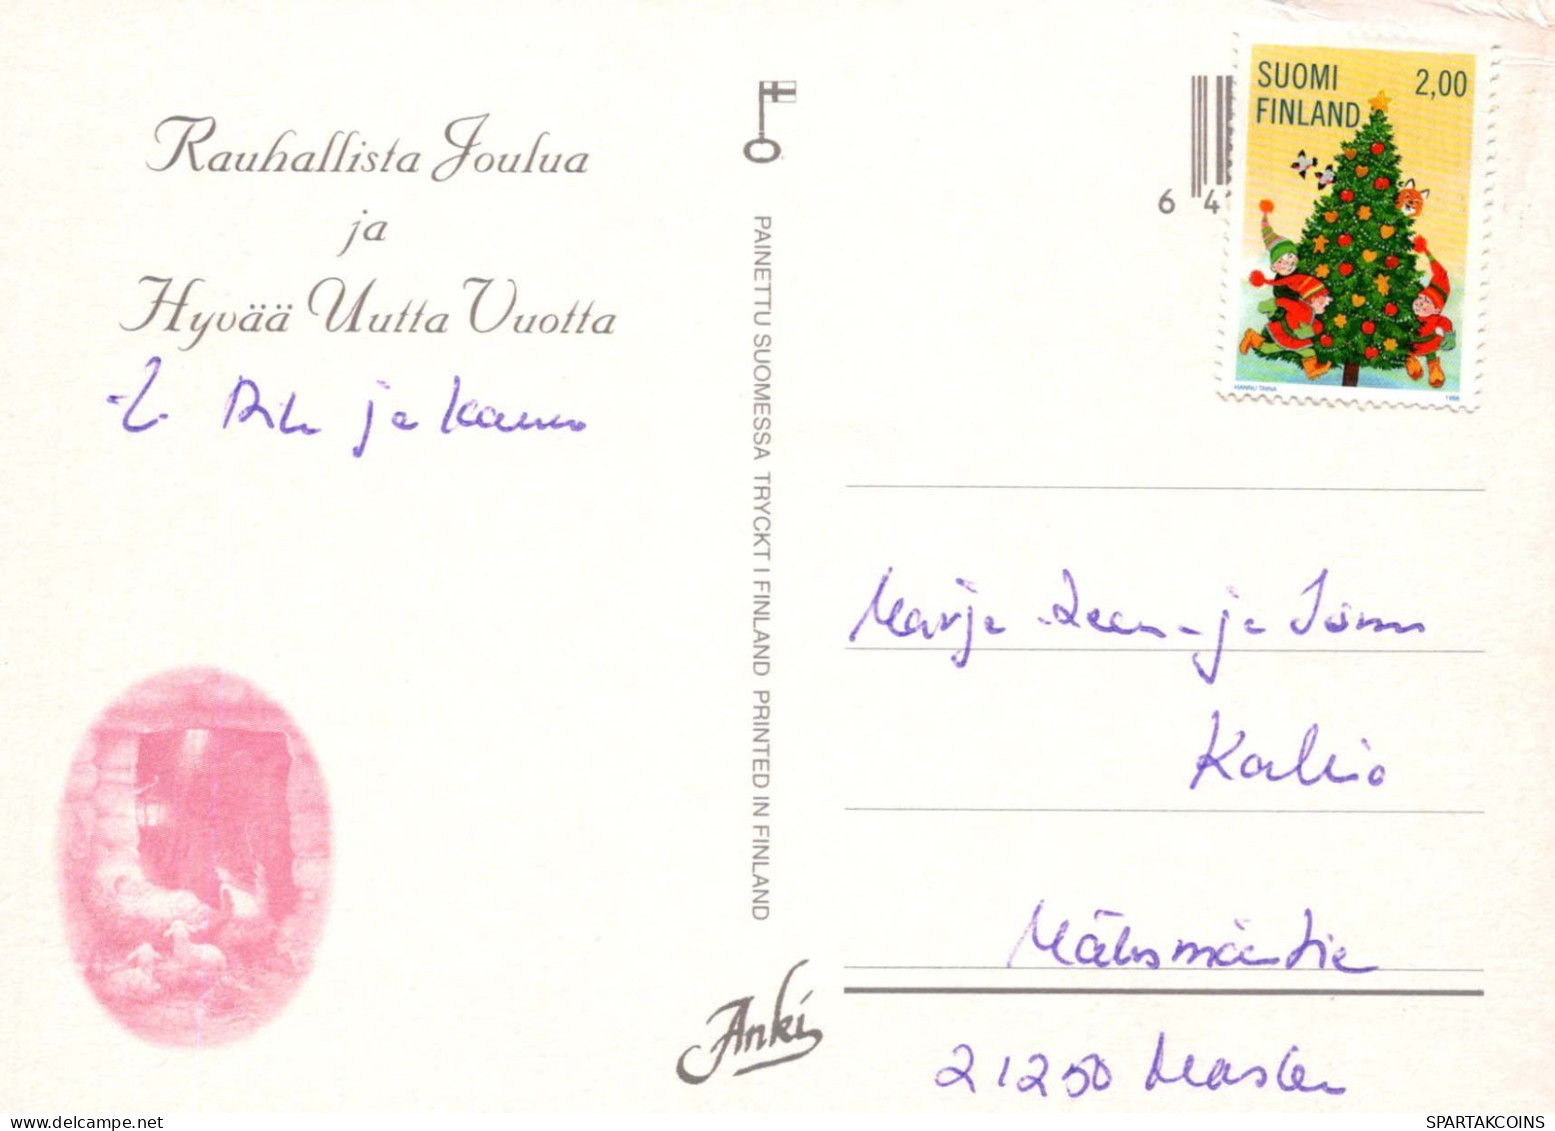 Virgen María Virgen Niño JESÚS Navidad Religión Vintage Tarjeta Postal CPSM #PBB902.ES - Maagd Maria En Madonnas